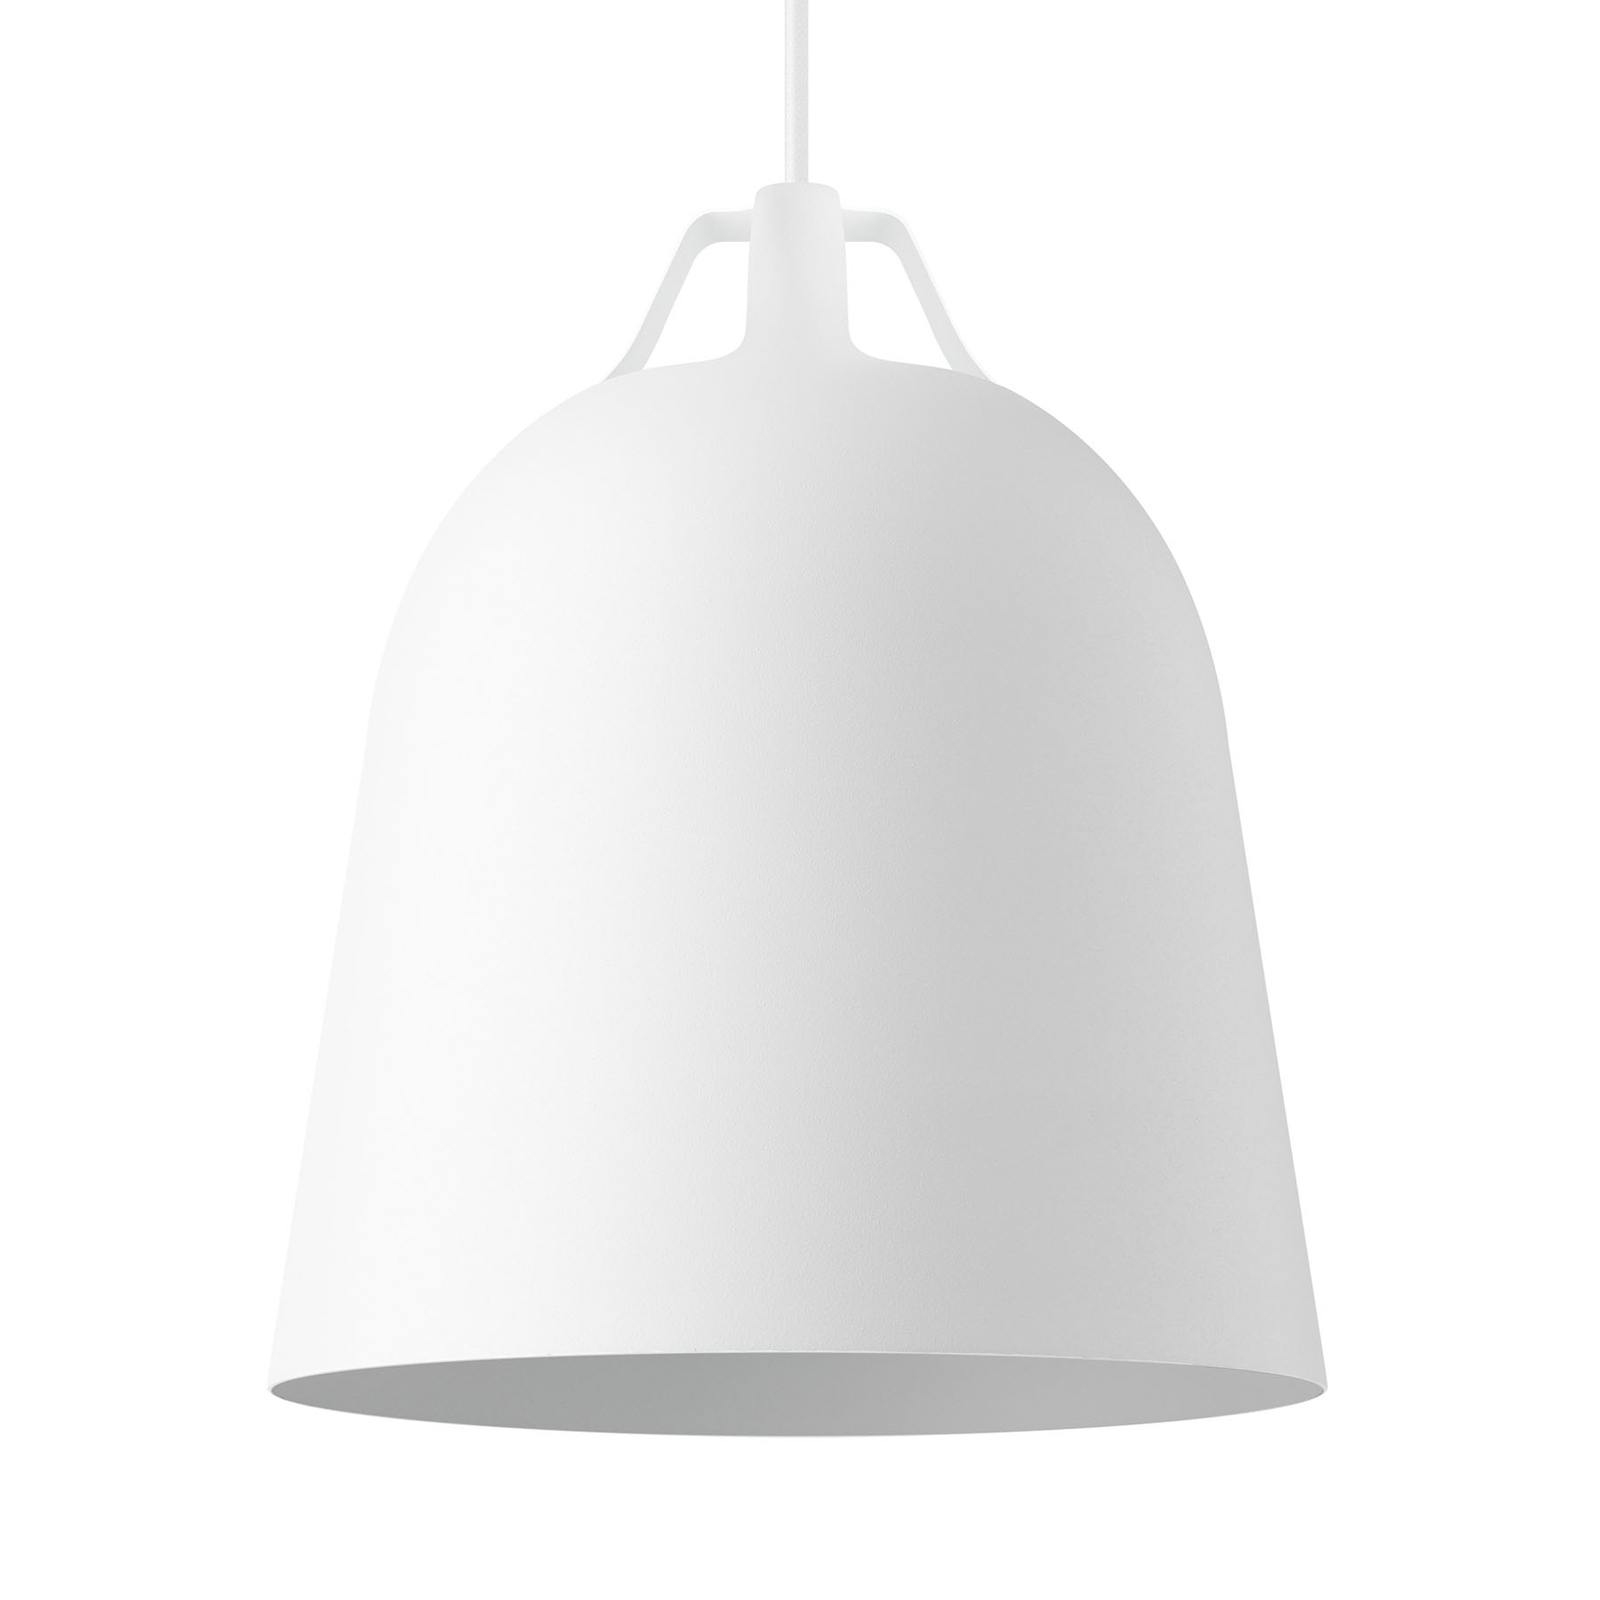 EVA Solo Clover hængelampe, Ø 21cm, hvid